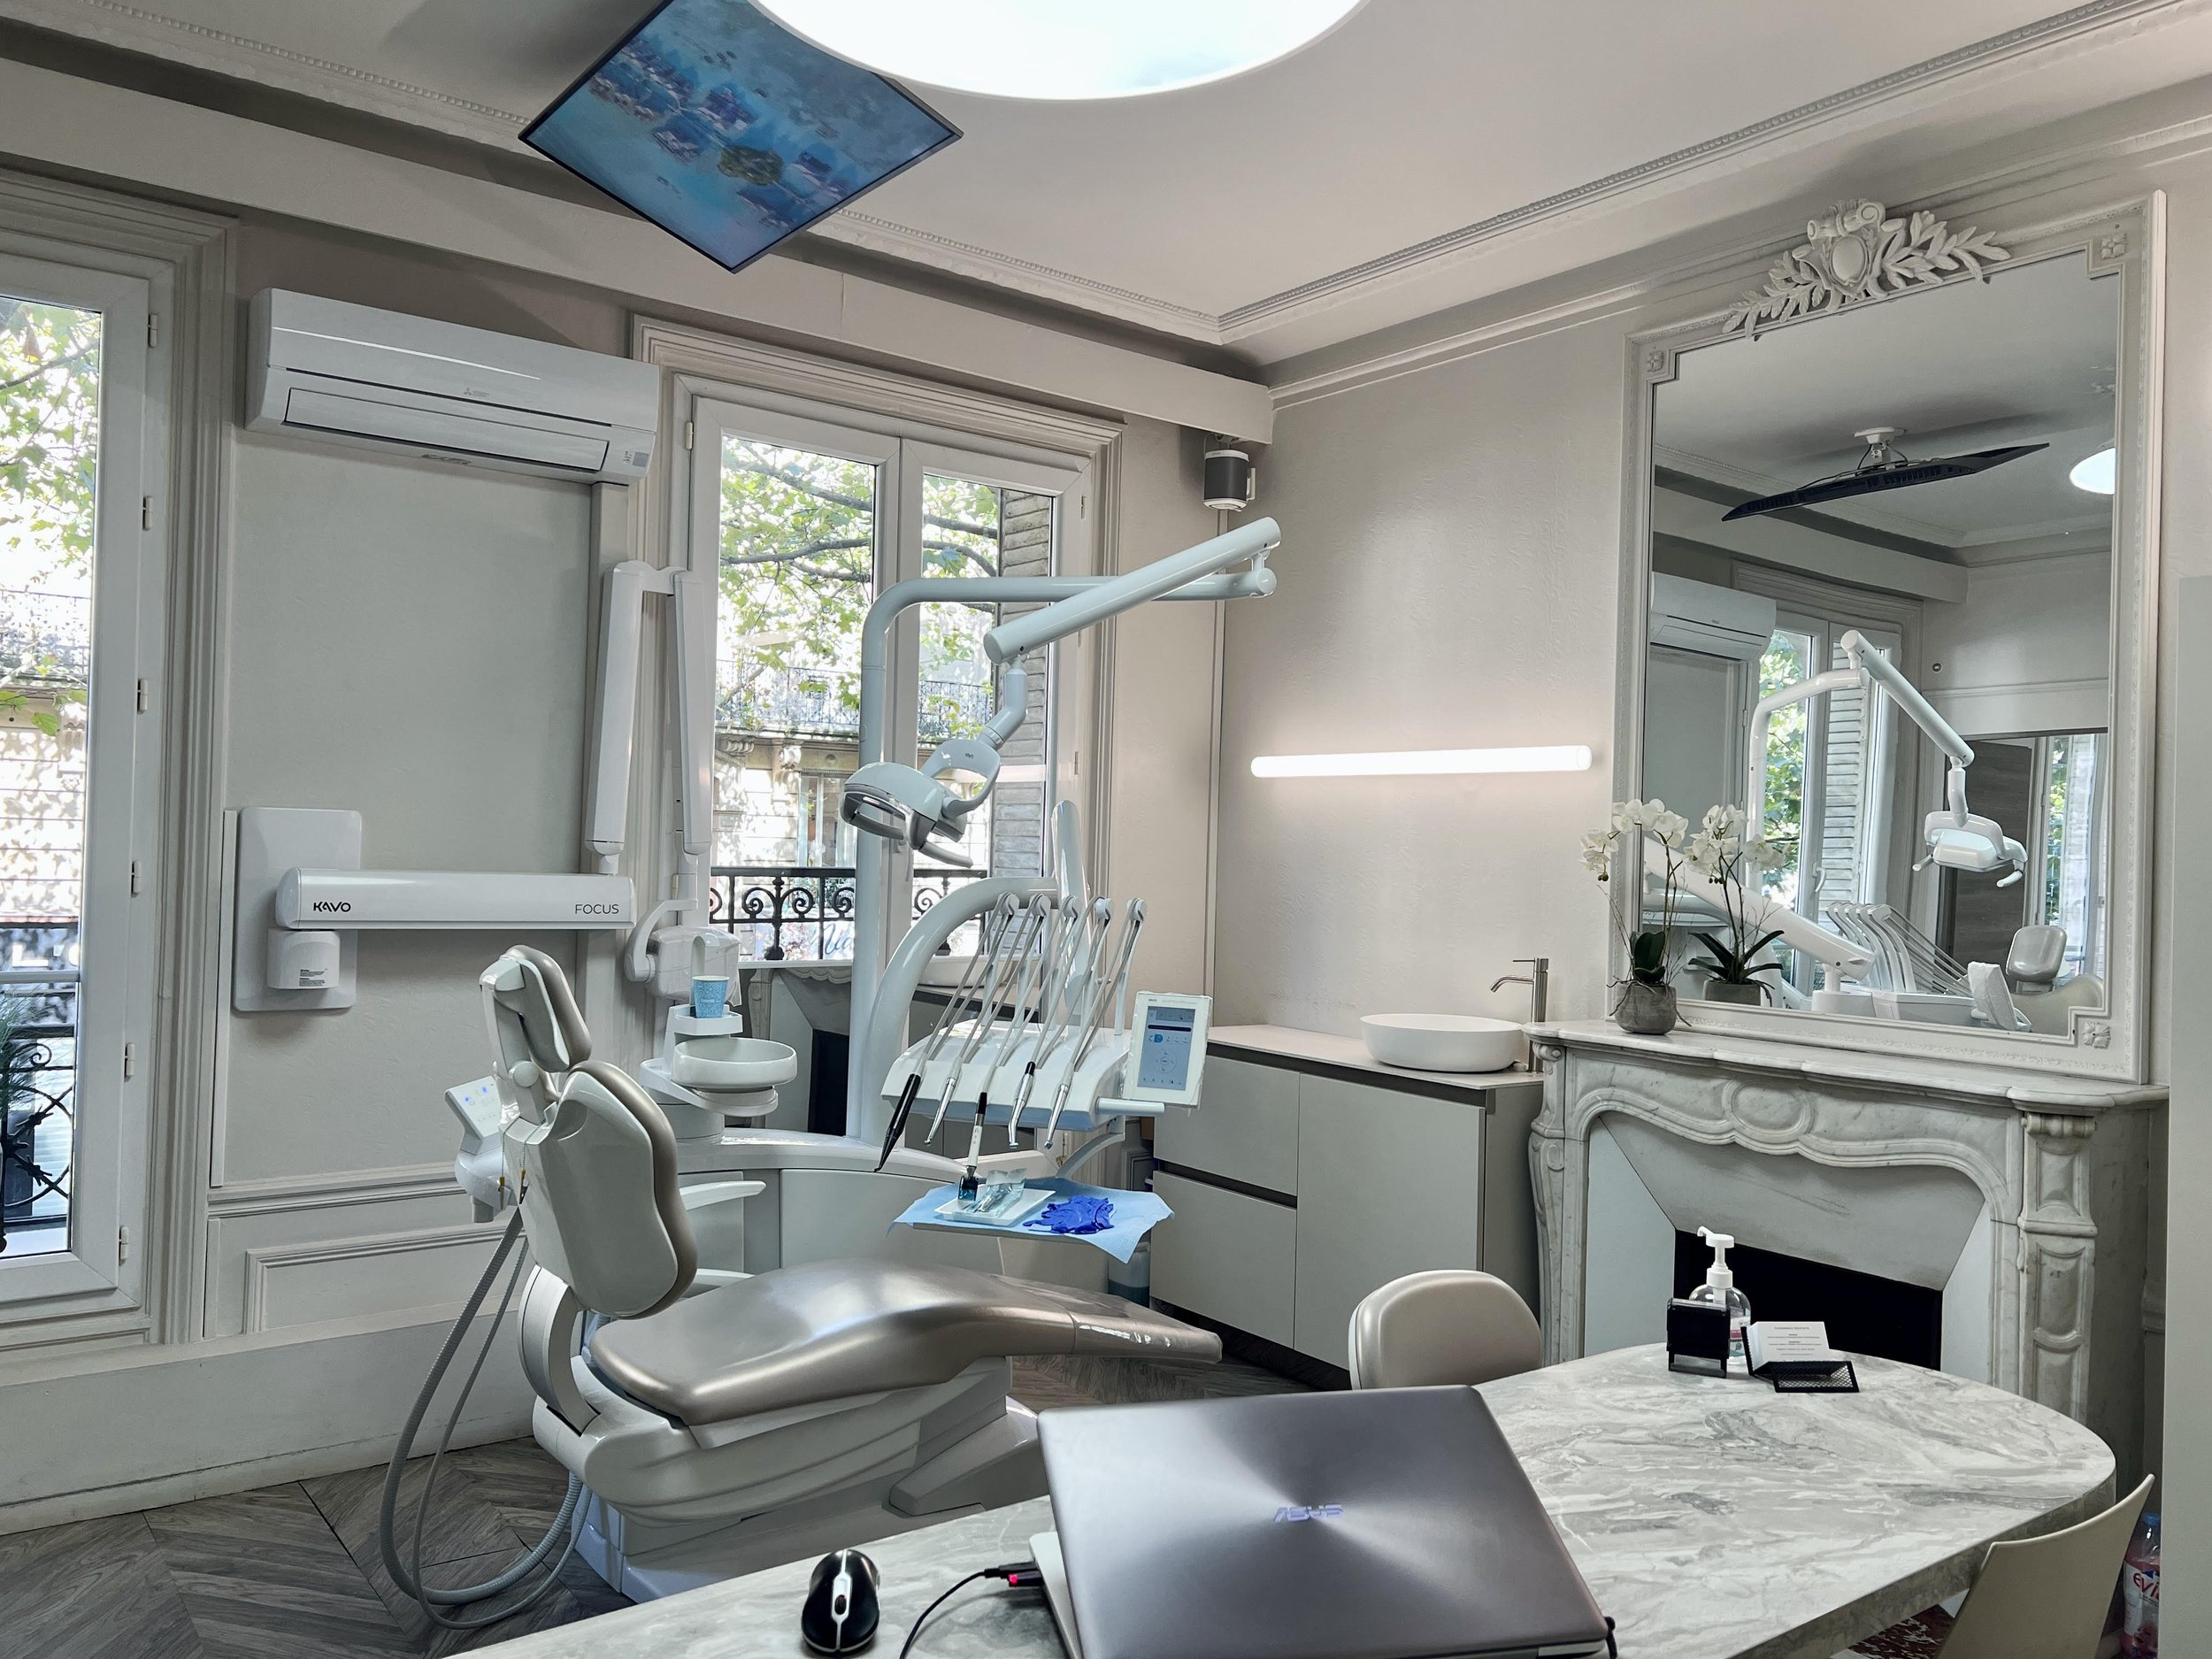 стоматологическая хирургия